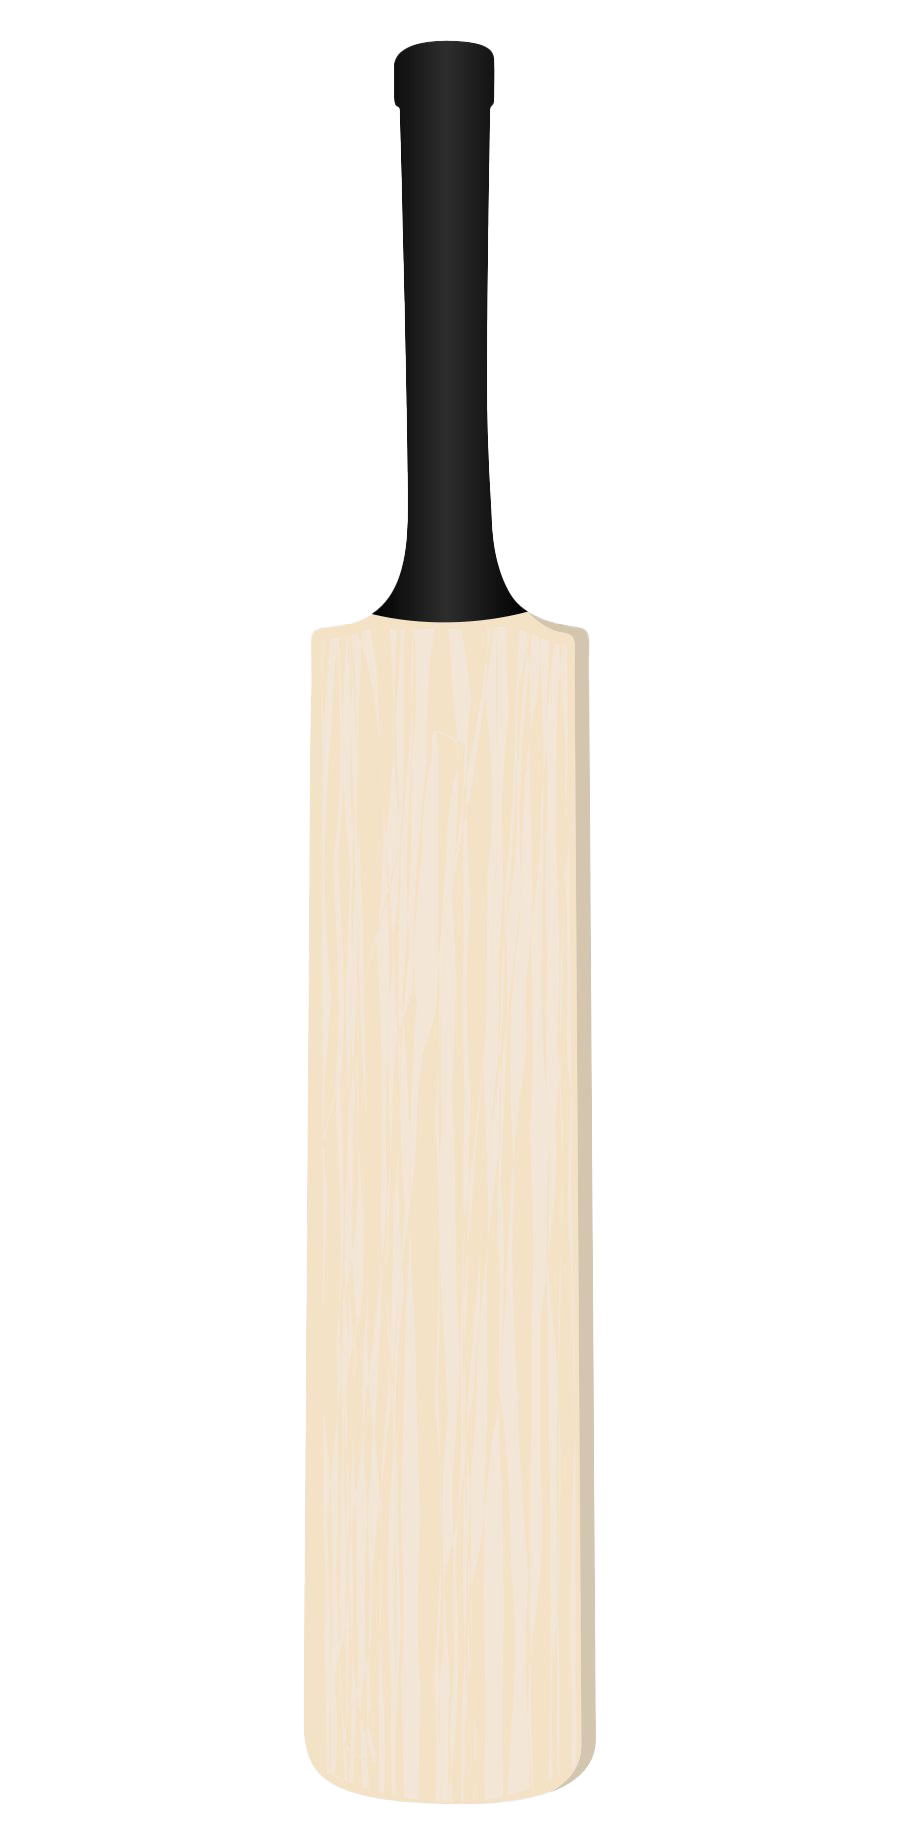 Cricket Bat PNG Transparent Images - PNG All